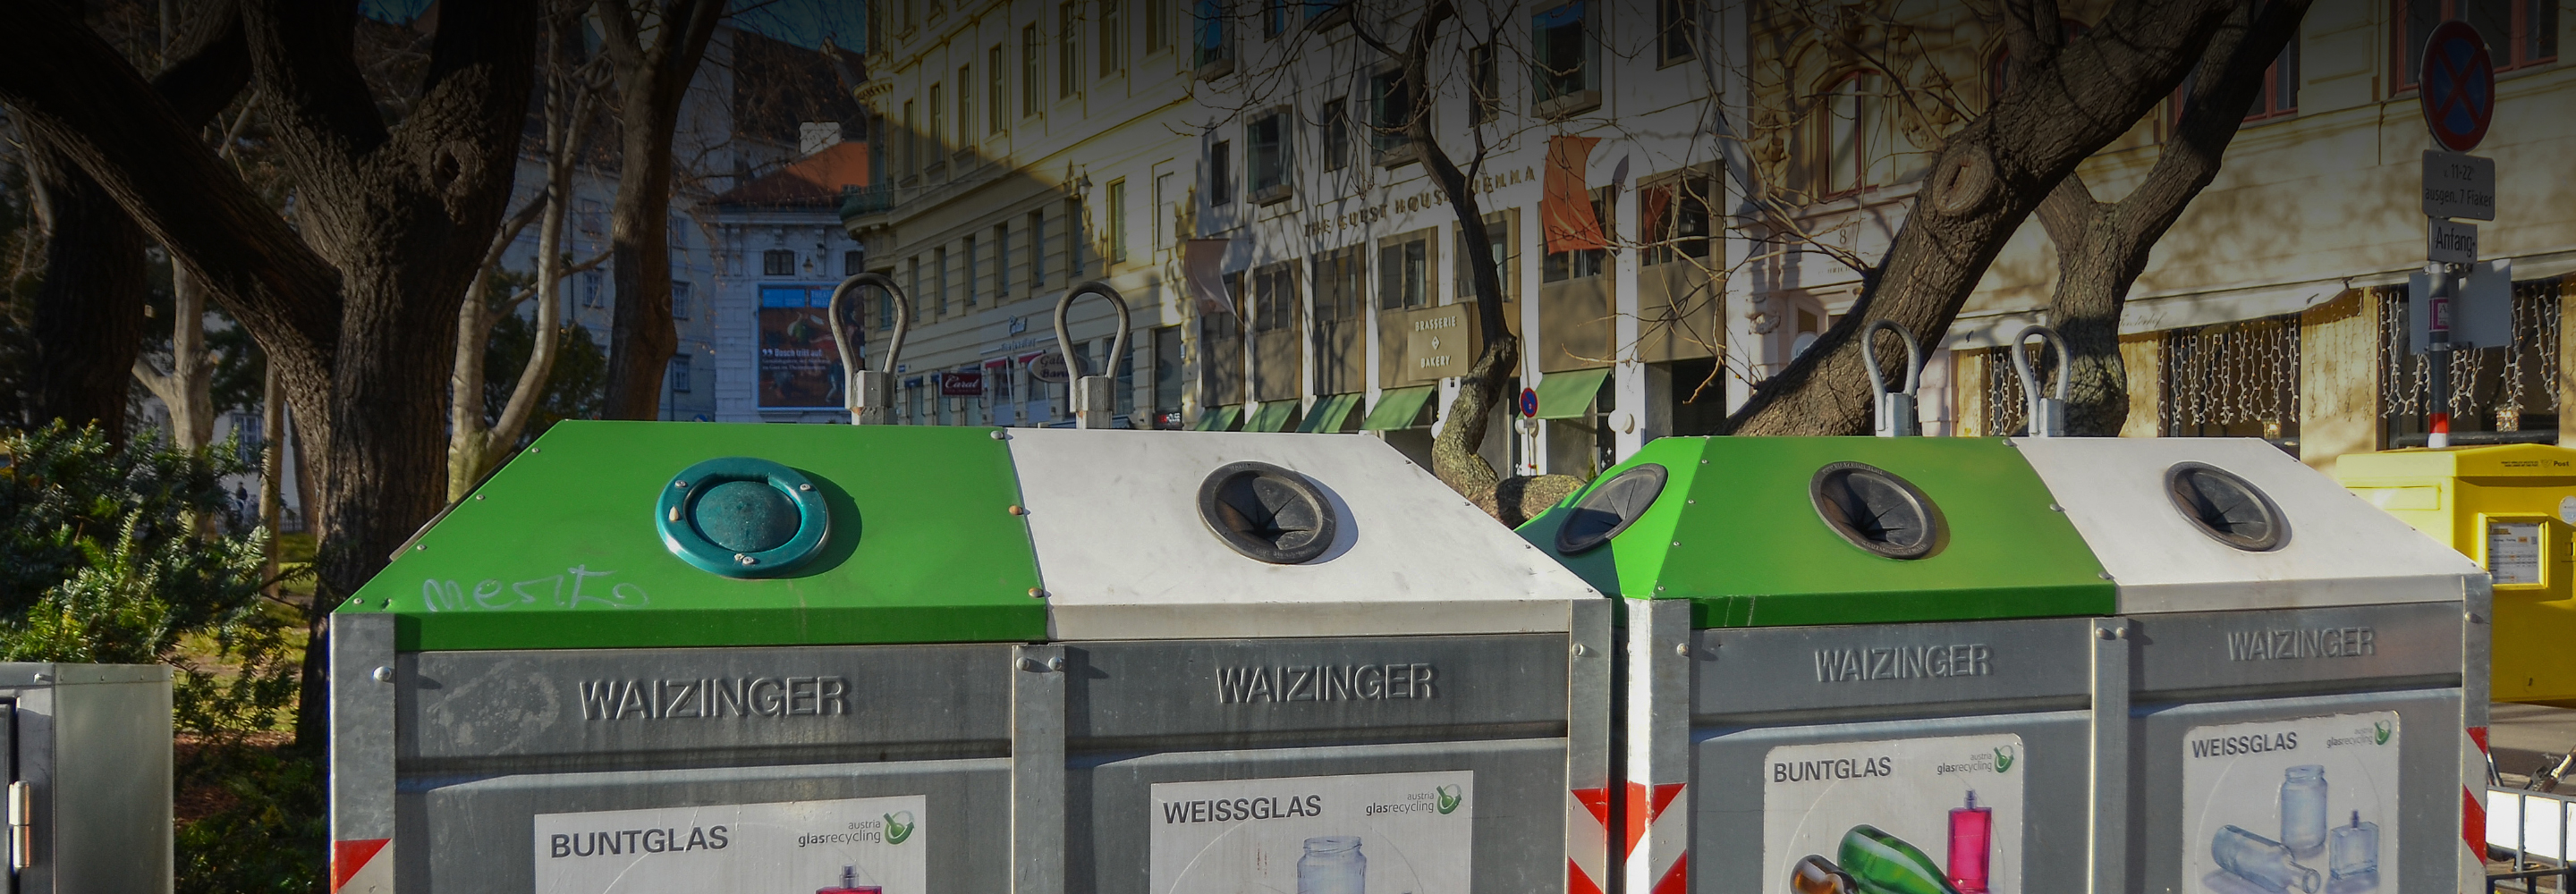 Цветные пакеты, жалобы на нарушителей и штрафы: как устроена сортировка отходов в Европе